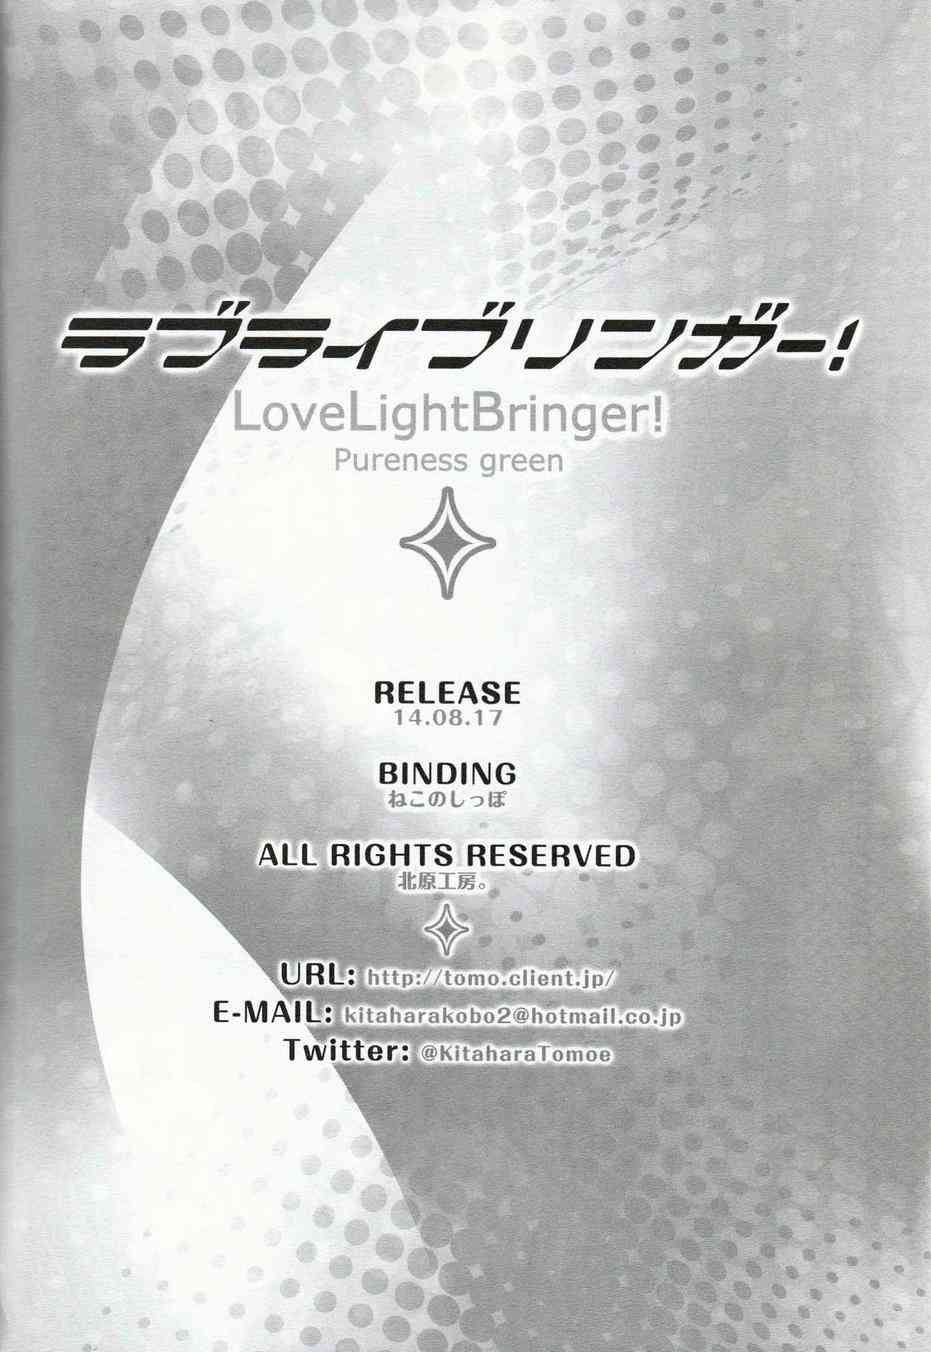 LoveLive - LoveLightBringer Pure篇 - 4